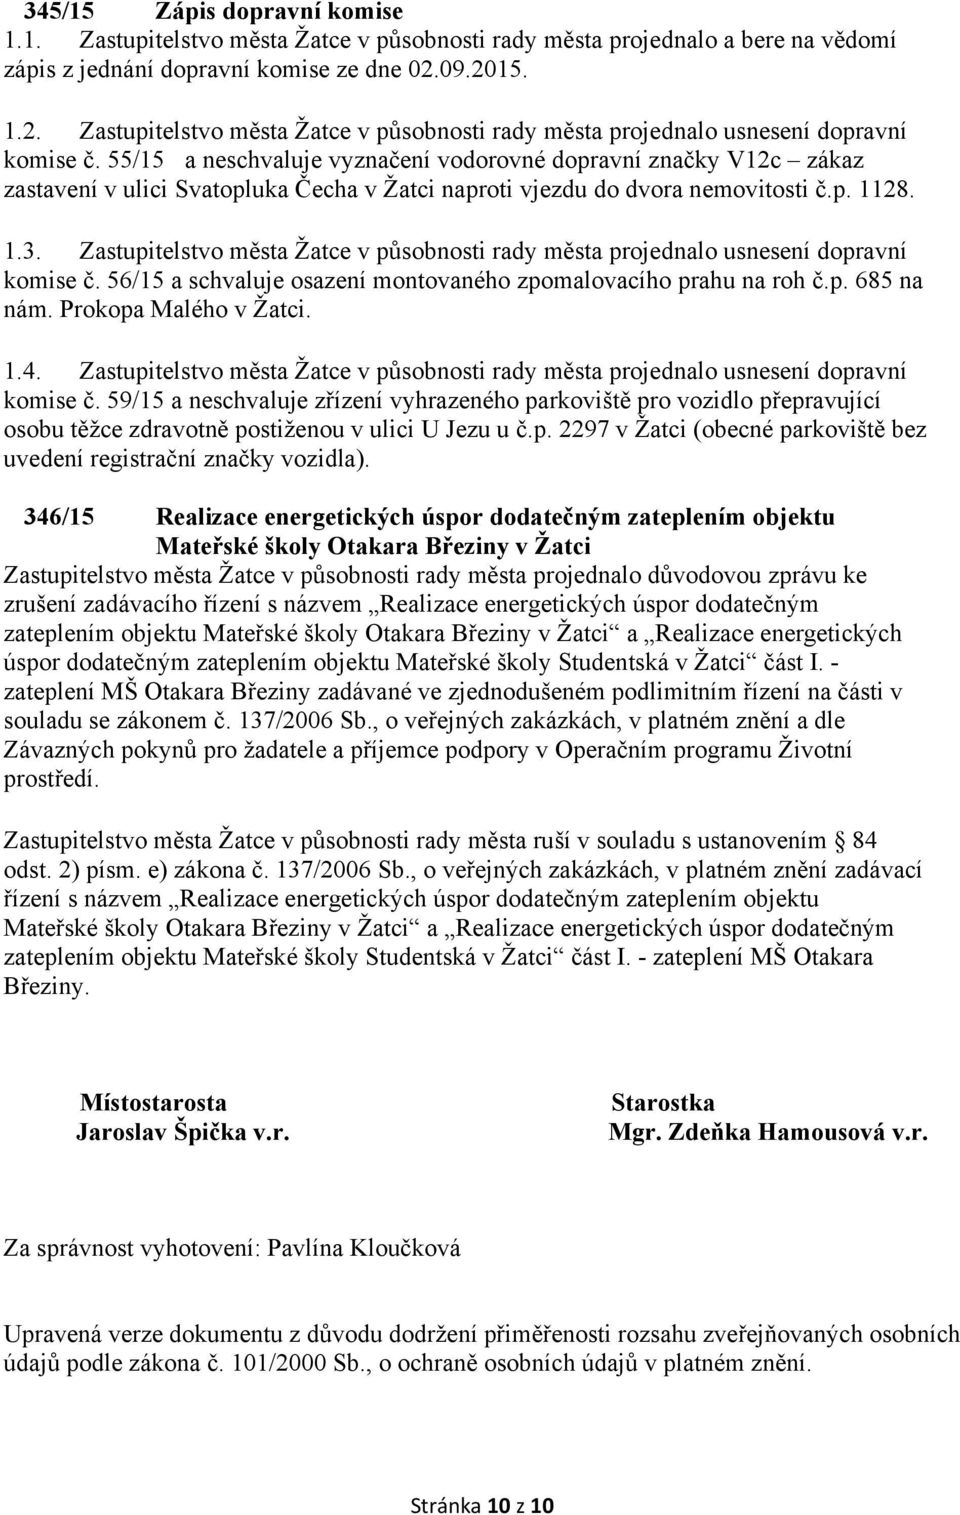 55/15 a neschvaluje vyznačení vodorovné dopravní značky V12c zákaz zastavení v ulici Svatopluka Čecha v Žatci naproti vjezdu do dvora nemovitosti č.p. 1128. 1.3.